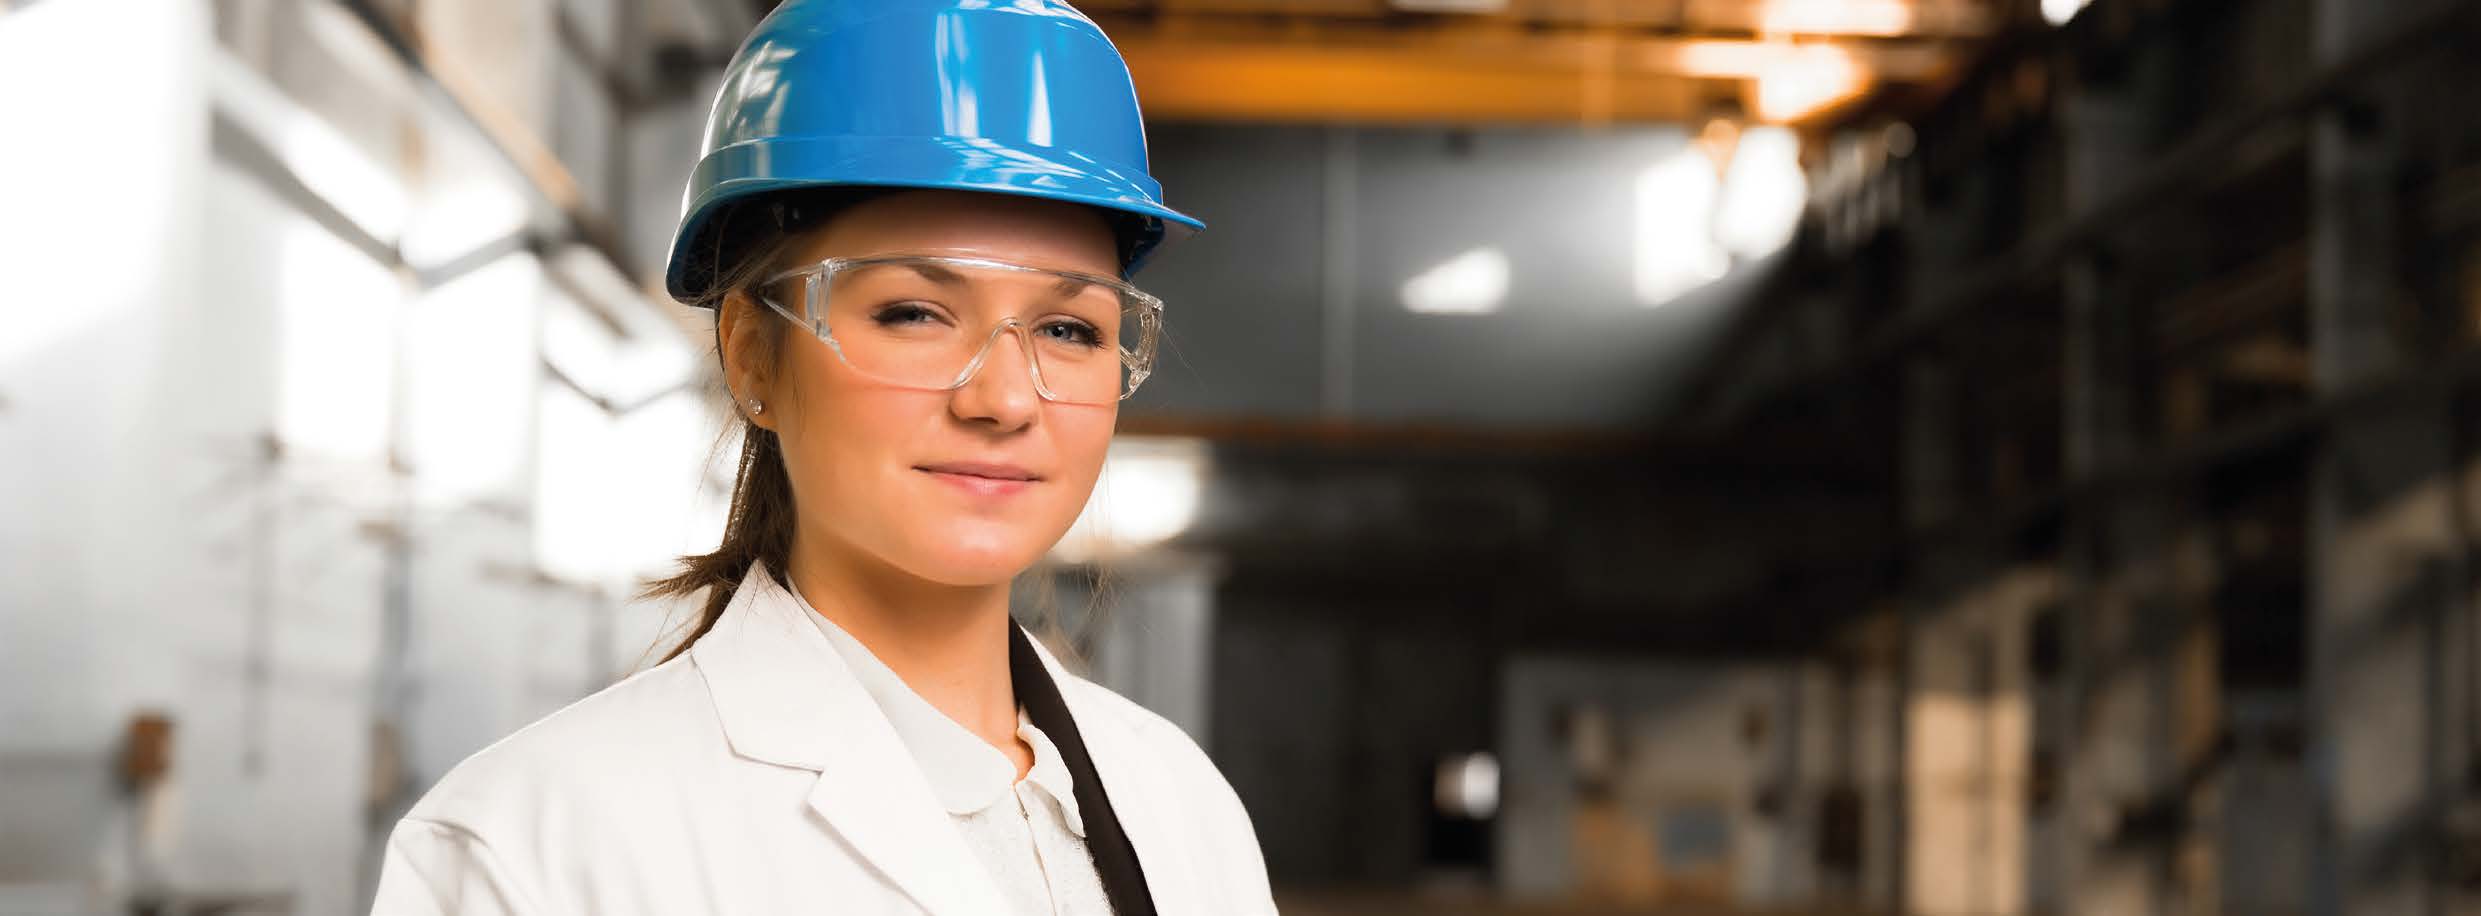 Kvinna med hjälm och skyddsglasögon i industrimiljö